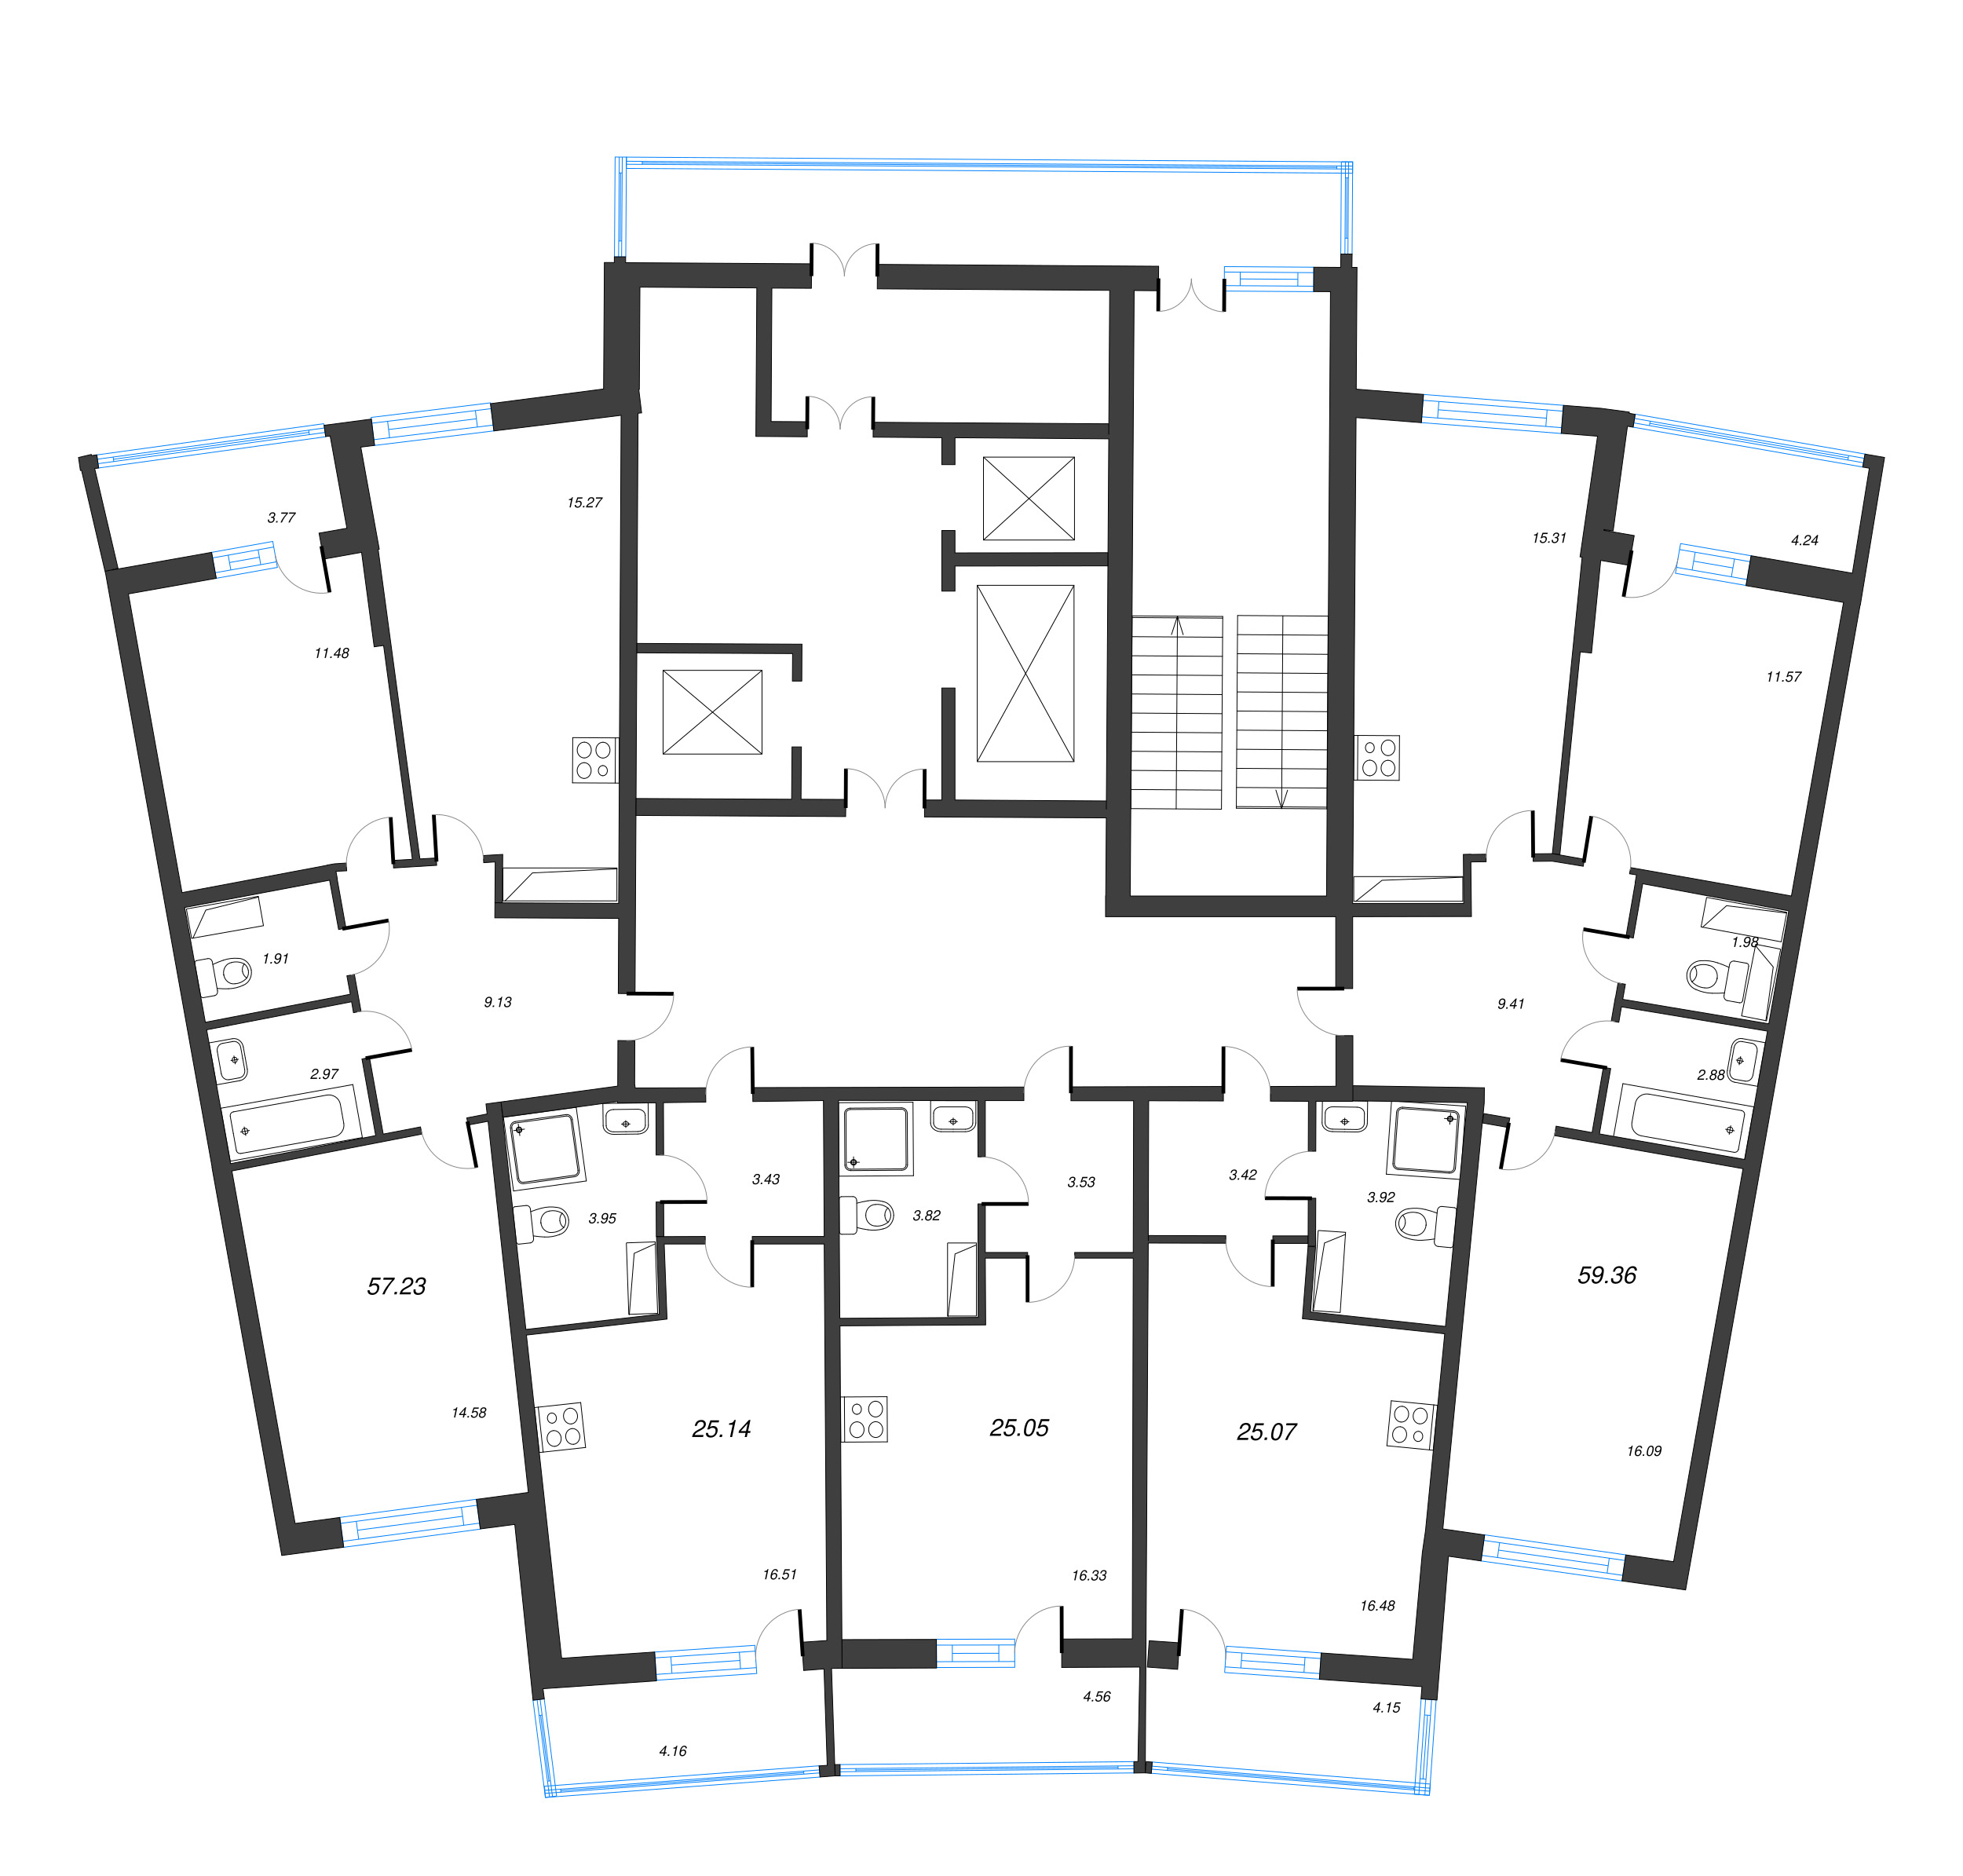 Квартира-студия, 25.07 м² в ЖК "Дом Левитан" - планировка этажа